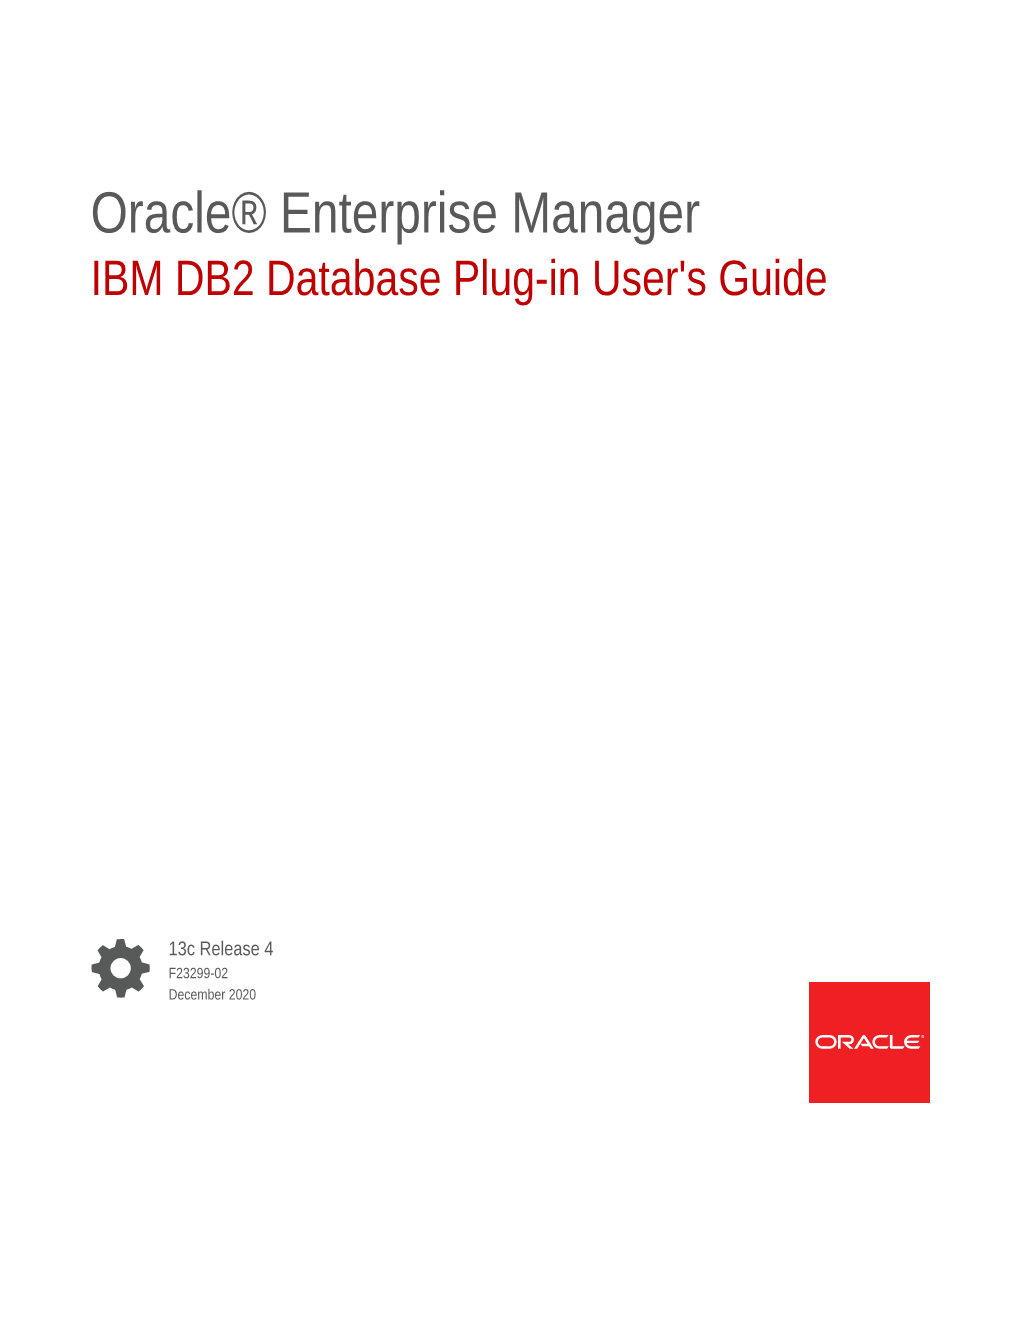 IBM DB2 Database Plug-In User's Guide